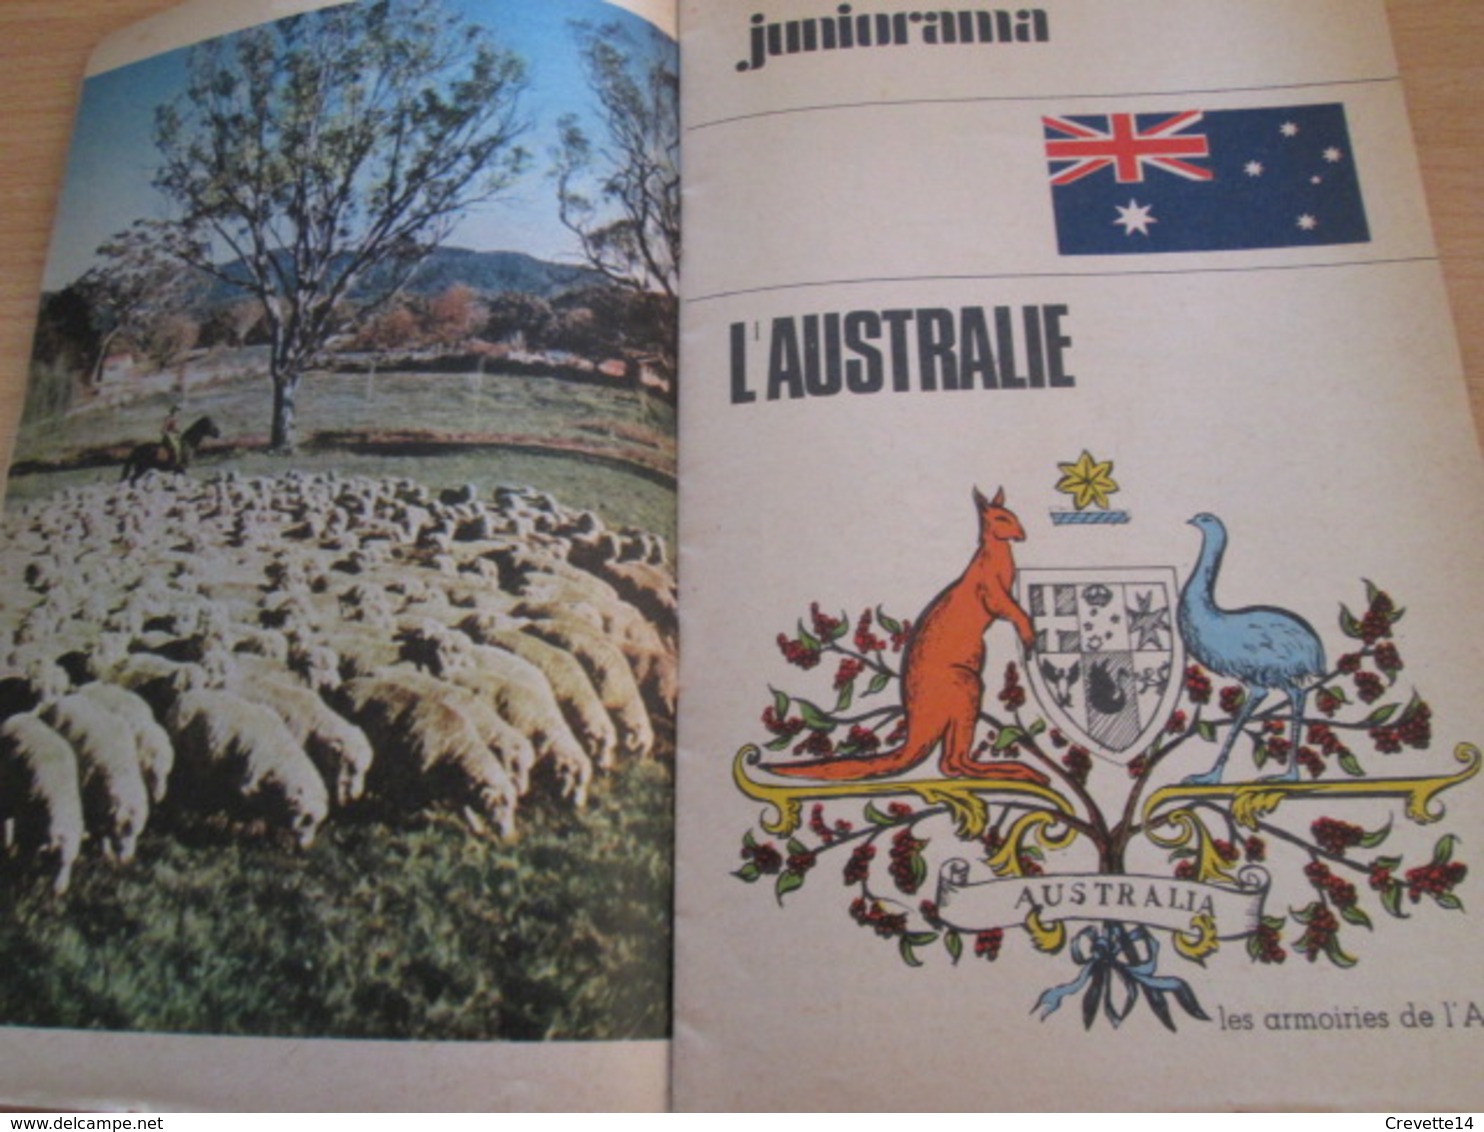 Petite revue publicitaire A5 année 1966 n°7 TOTAL JOURNAL incluant BD inédité de CRAENHALS / vu à 40€ chez I-B